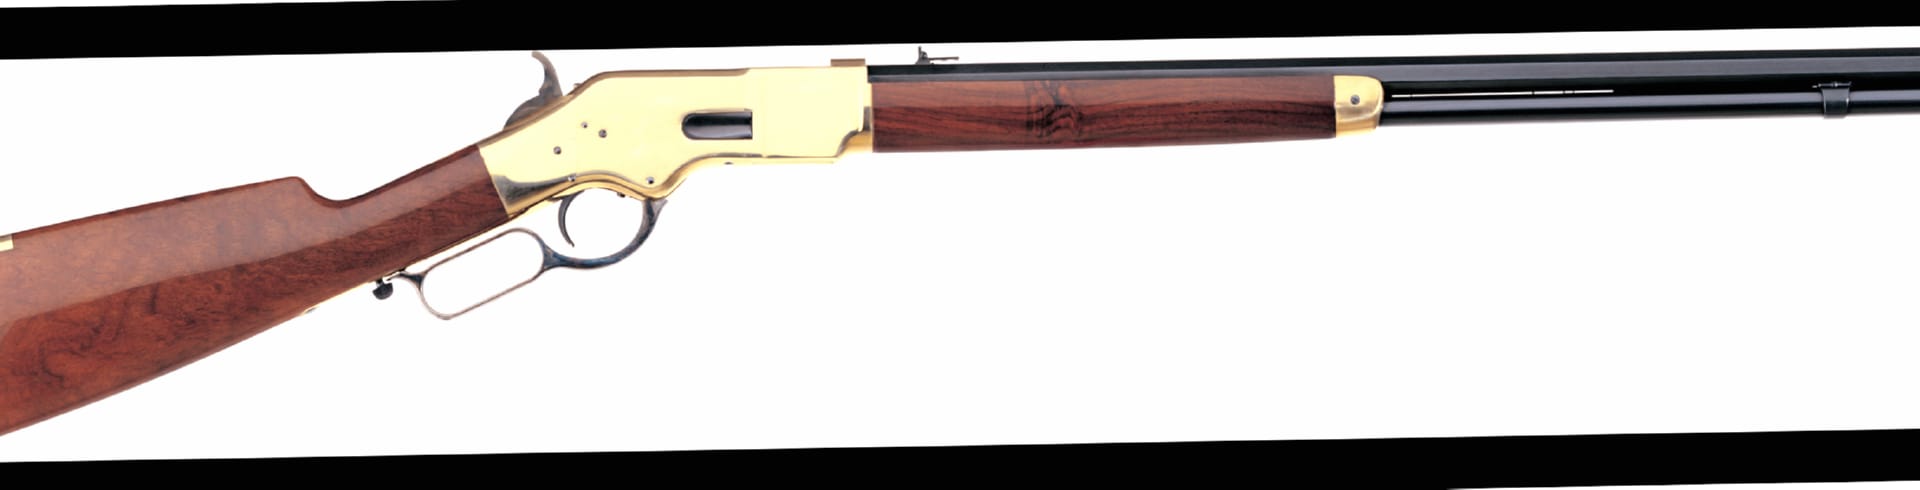 Uberti 1866 Yellowboy Rifle at 1152 x 864 size wallpapers HD quality